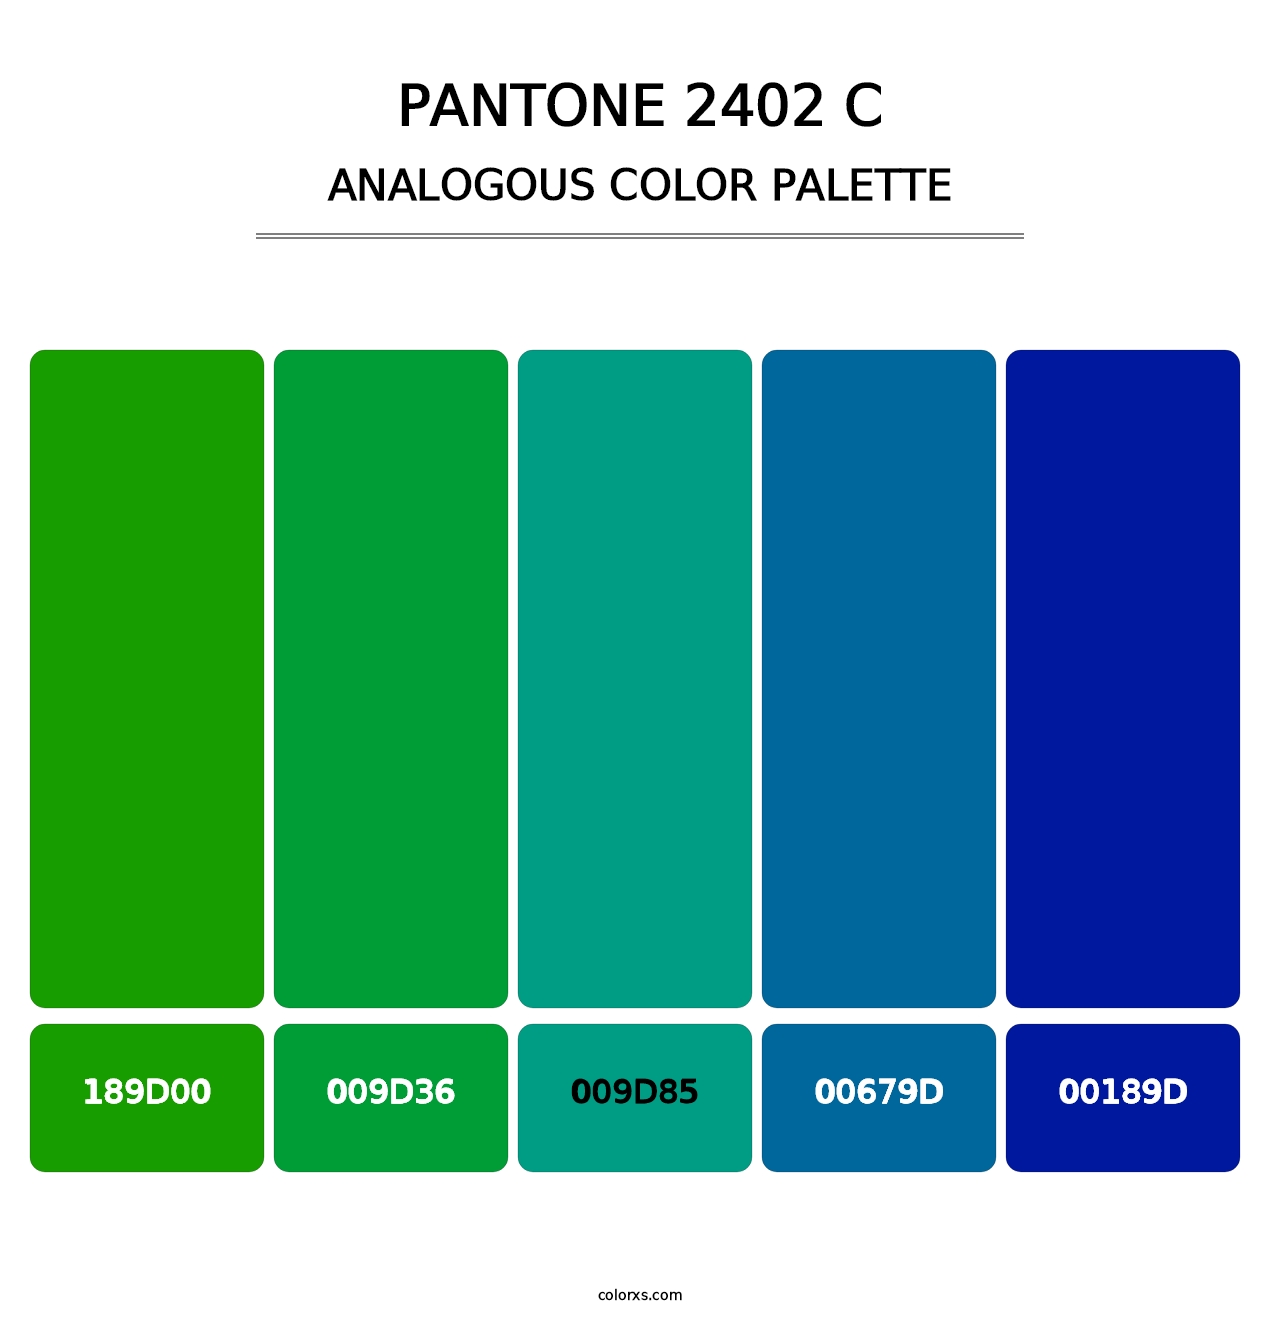 PANTONE 2402 C - Analogous Color Palette